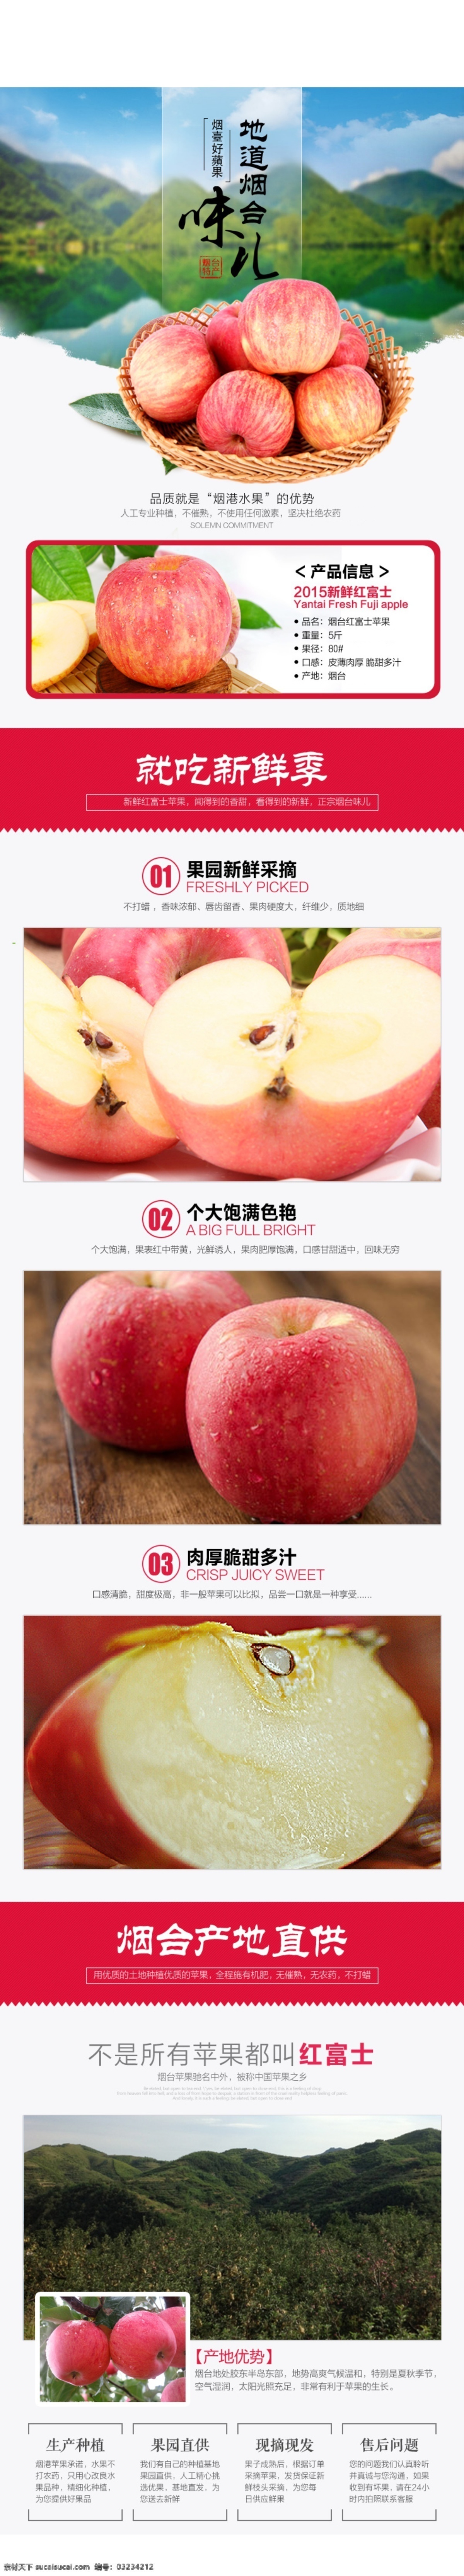 淘宝 红富士 苹果 水果 详情 页 水果详情页 白色